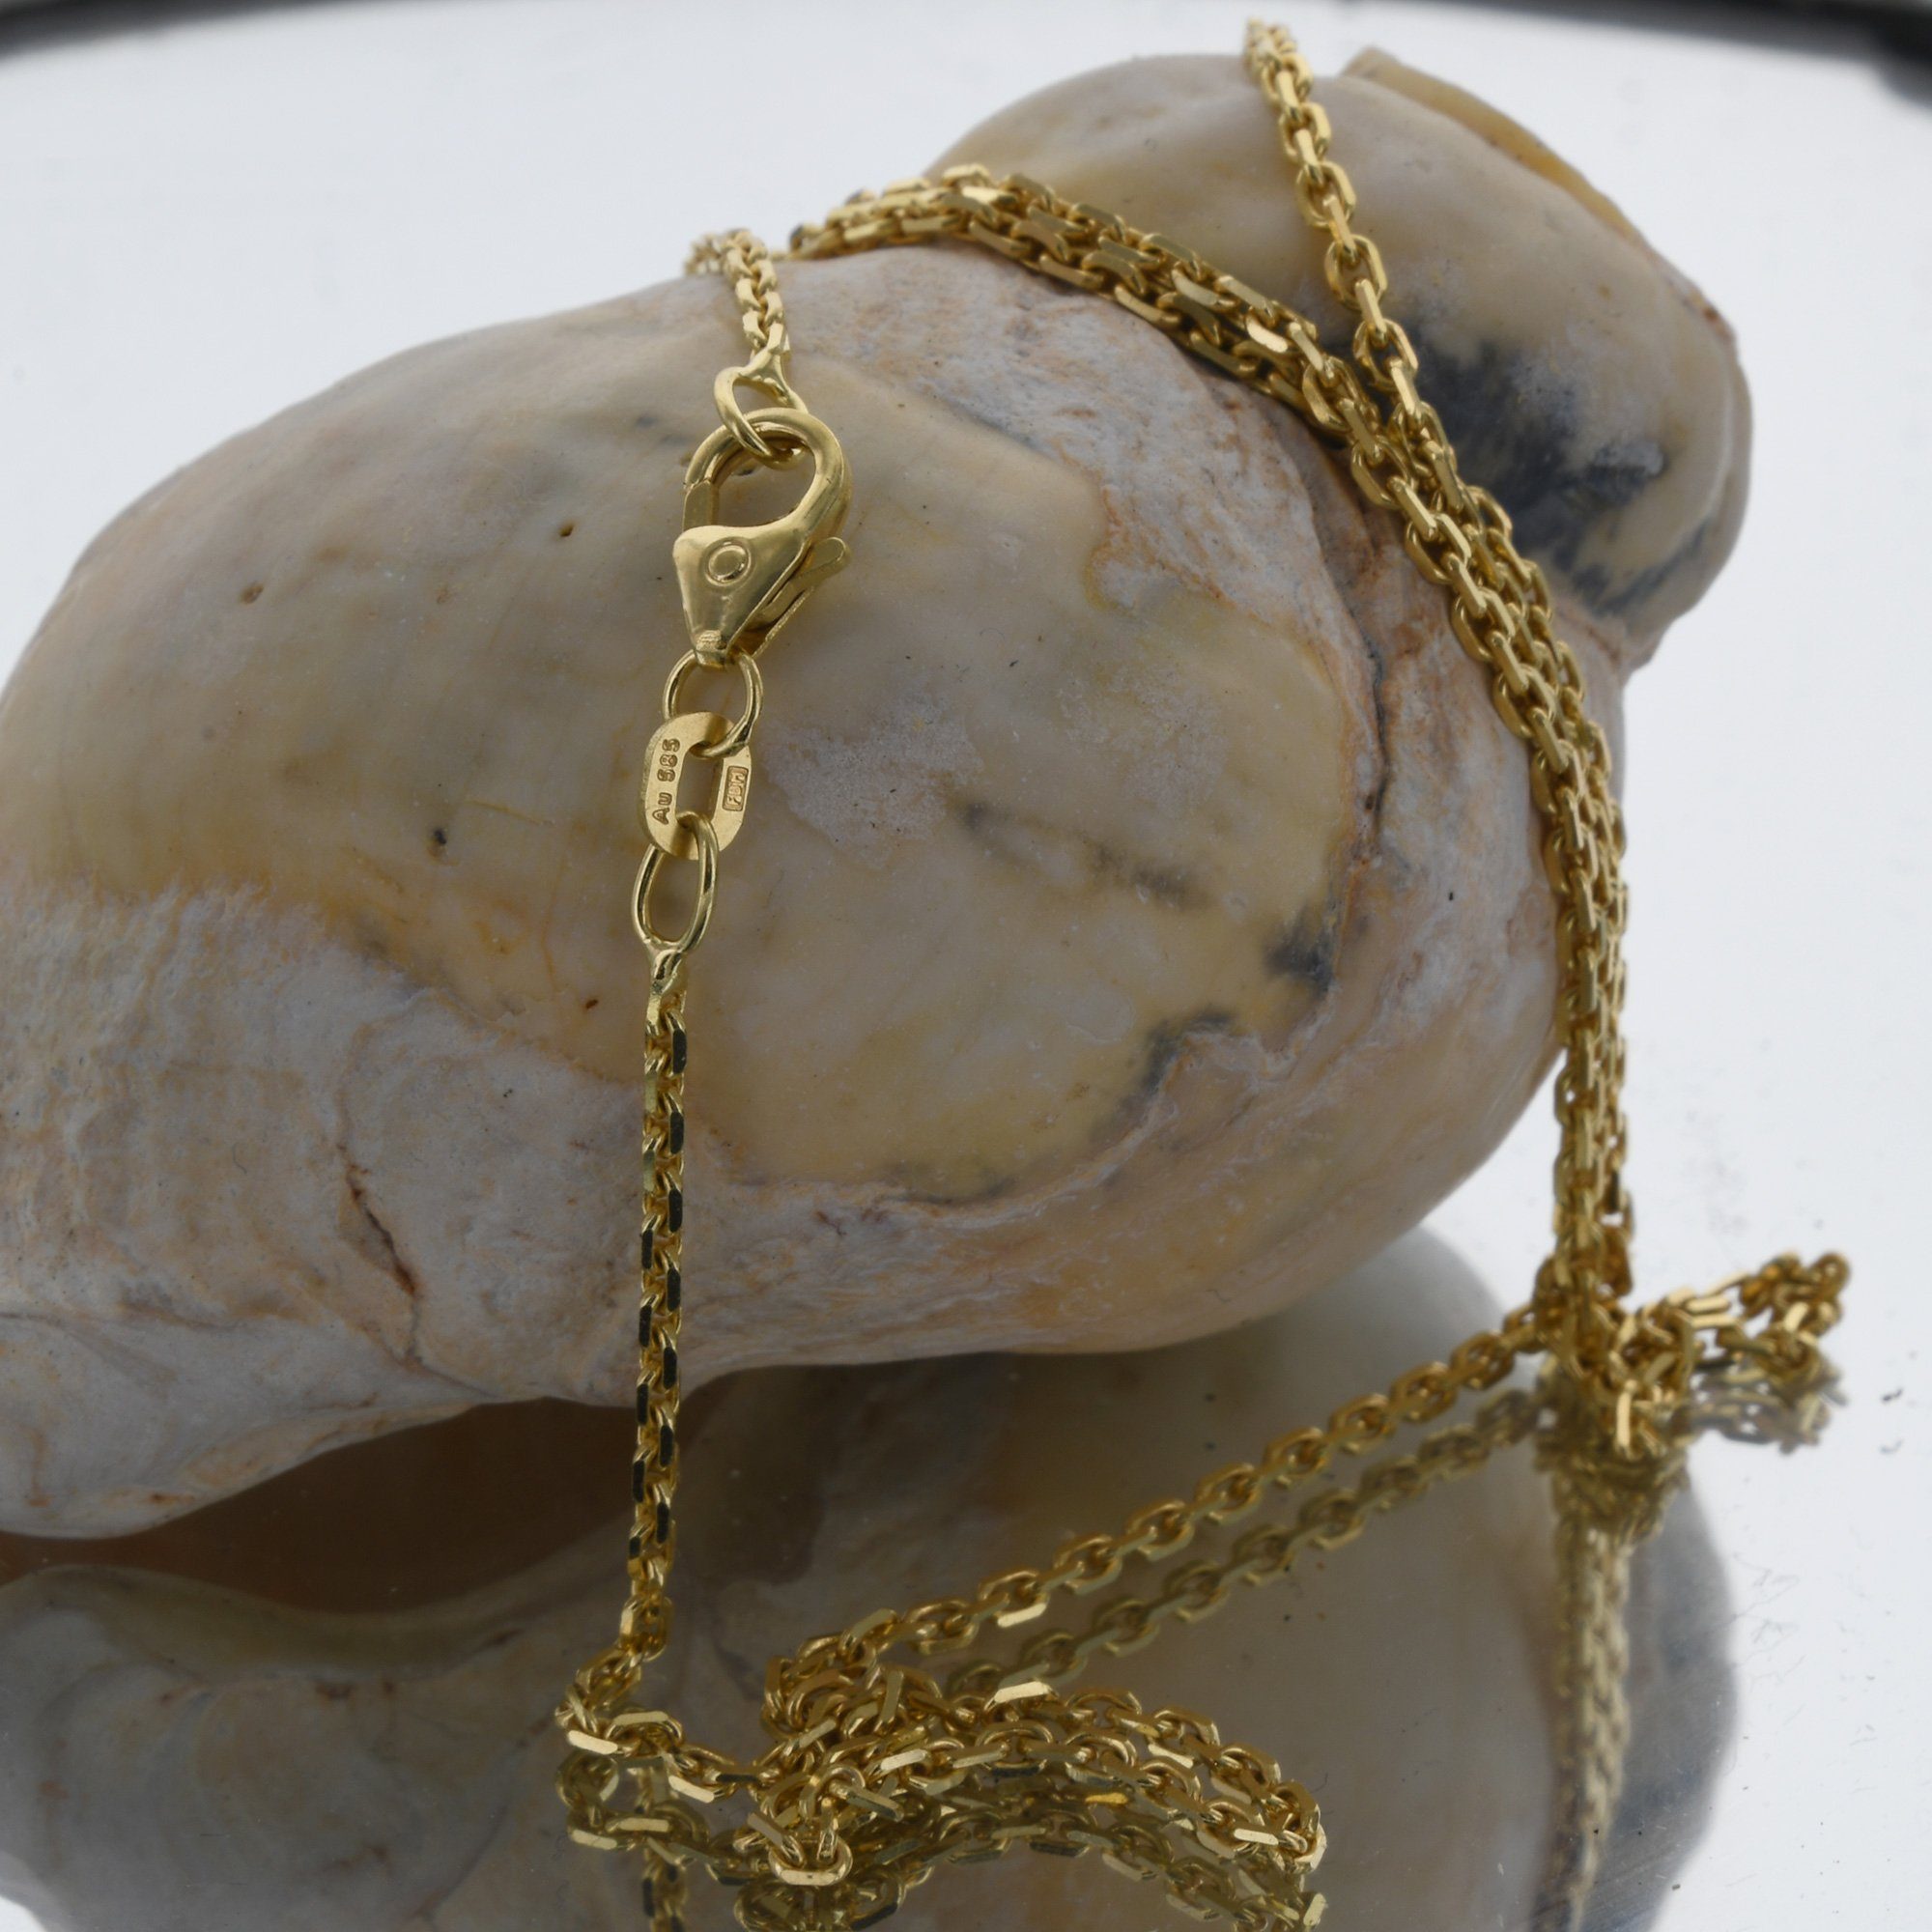 Herren Schmuck HOPLO Goldkette 1,7 mm 45 cm 585 - 14 Karat Gold Halskette Ankerkette diamantiert massiv Gold hochwertige Goldket